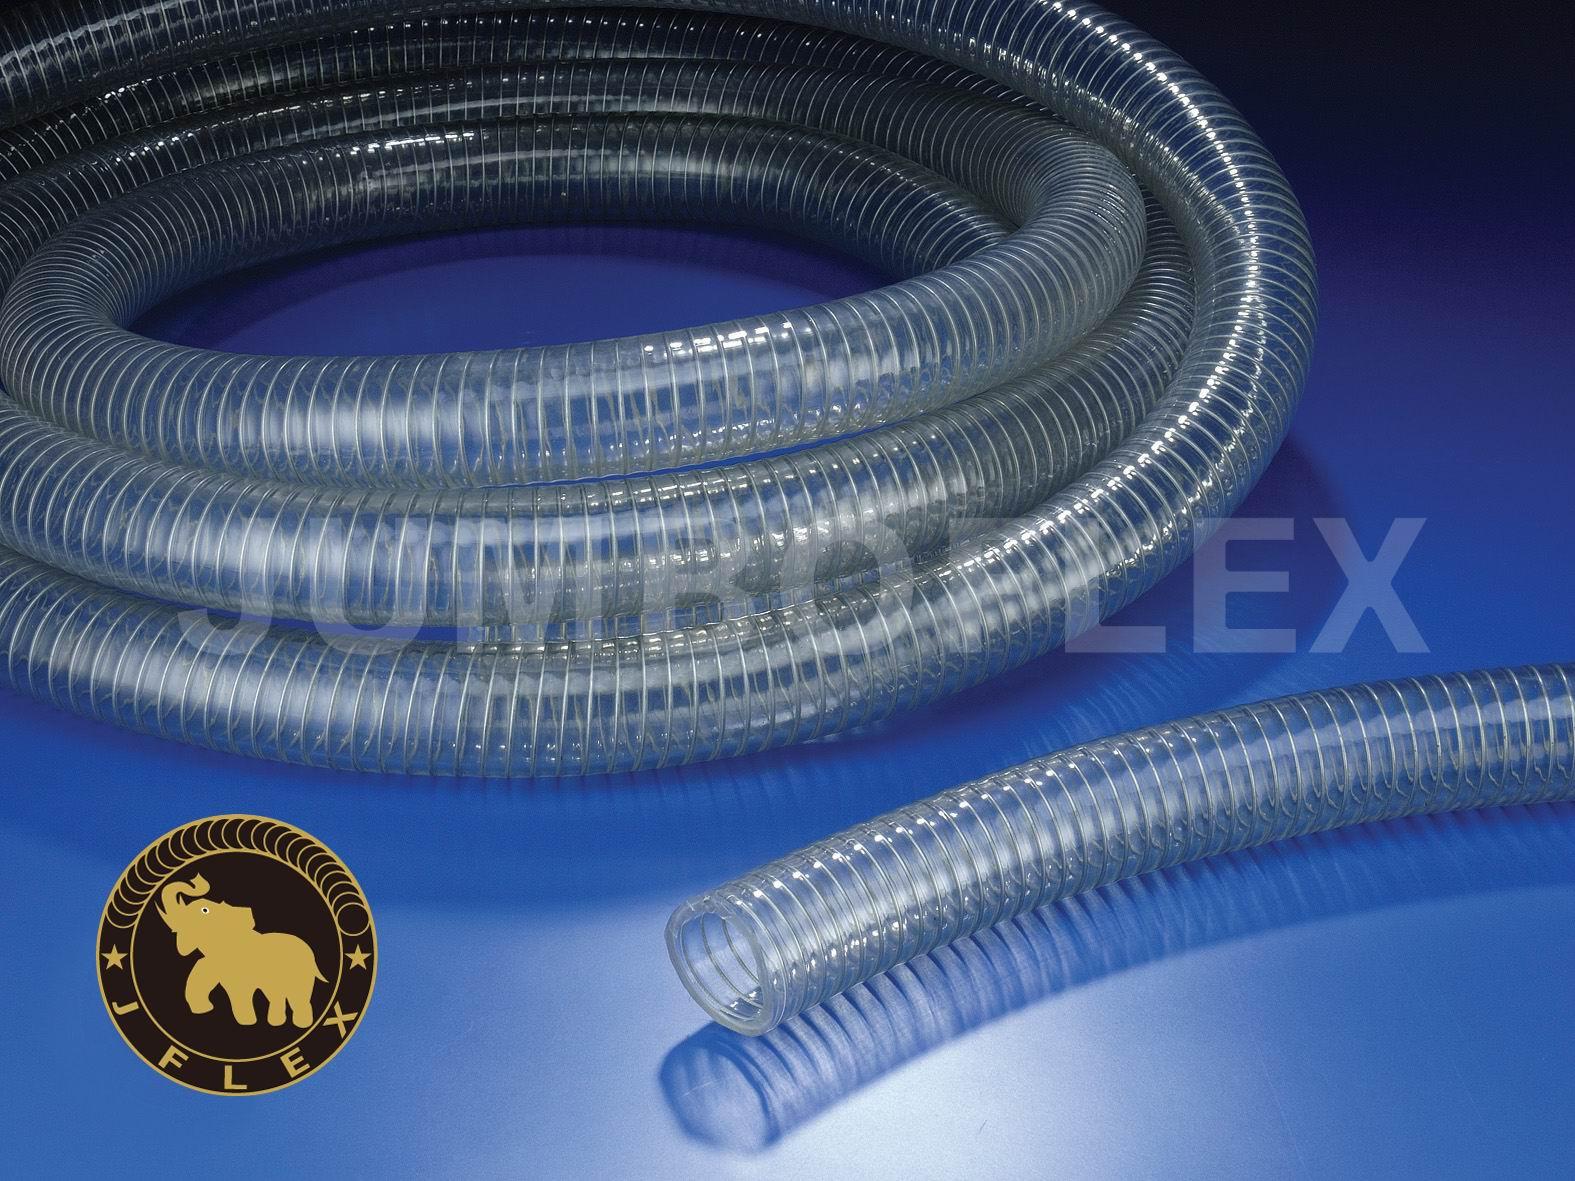 J 2-4 透明钢丝管 (符合FDA食品级用管)